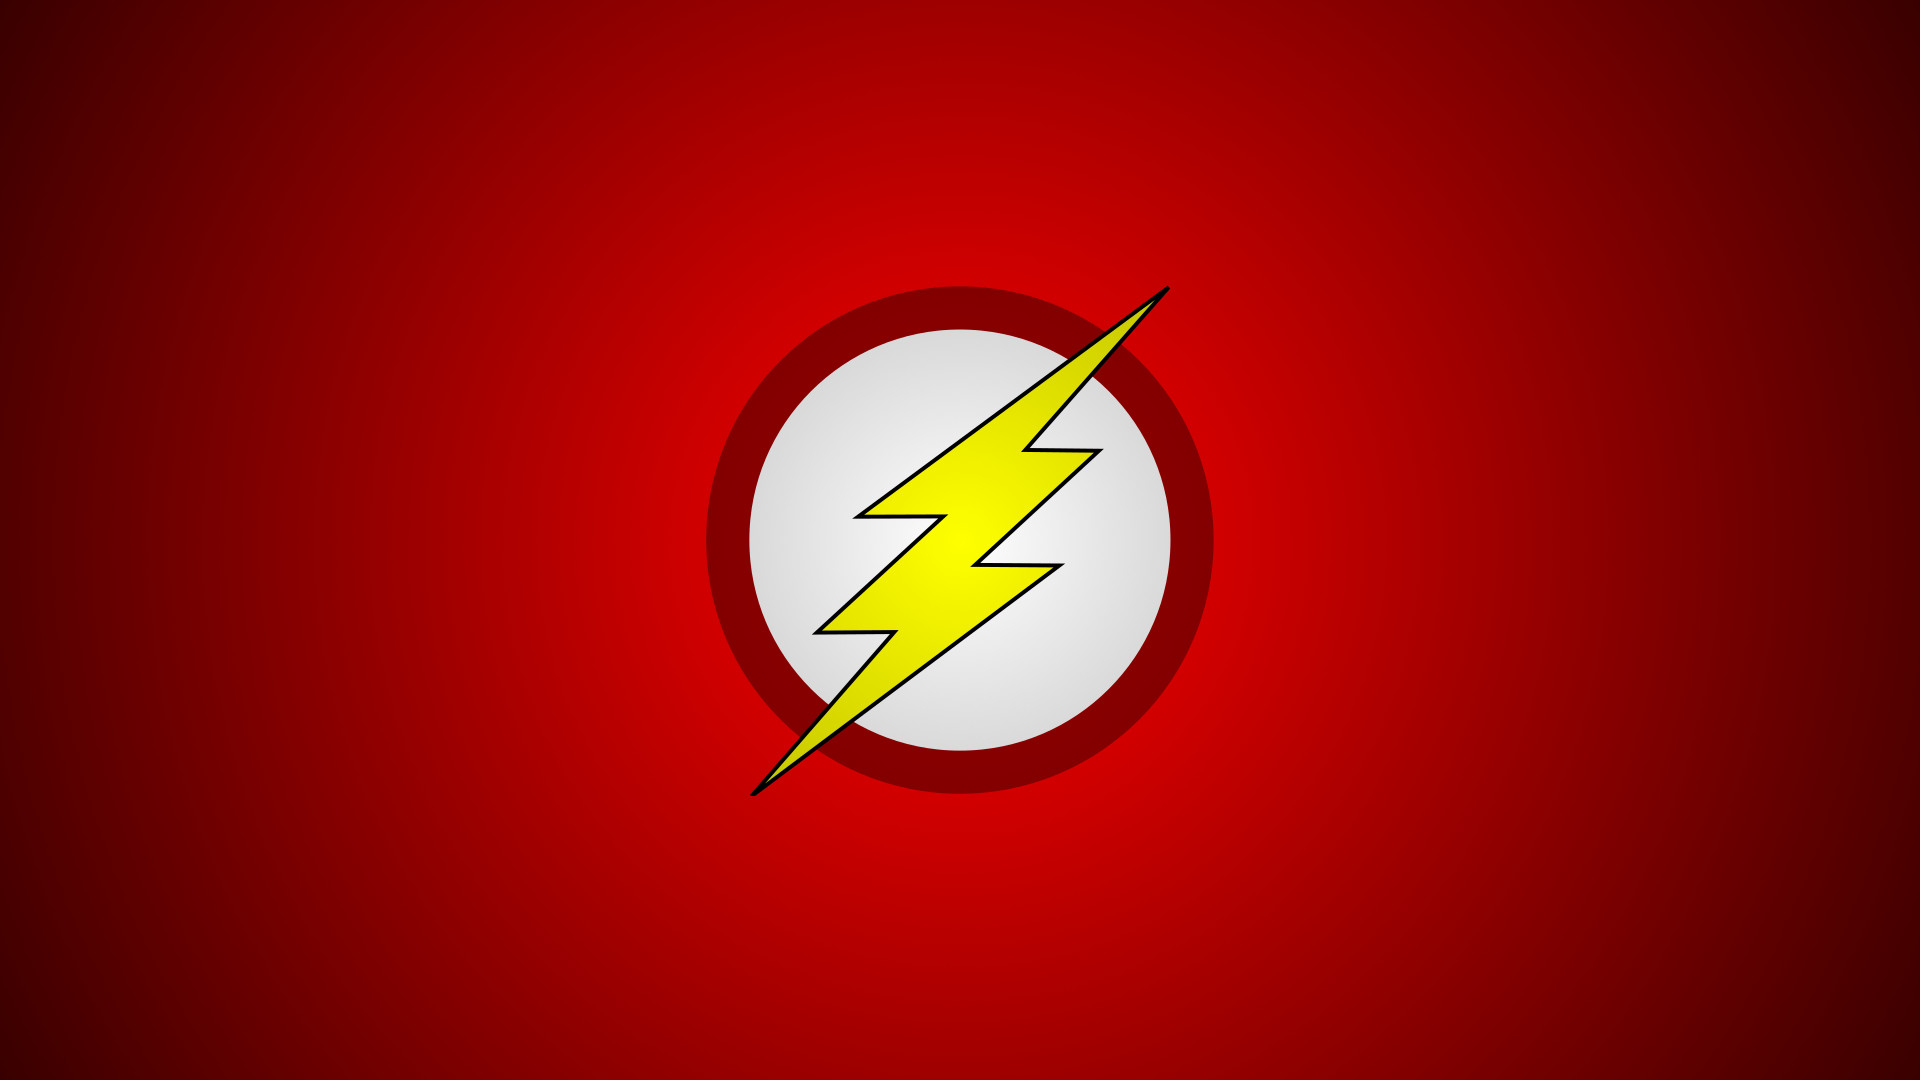 flash sfondi per iphone,rosso,giallo,font,disegno grafico,veloce